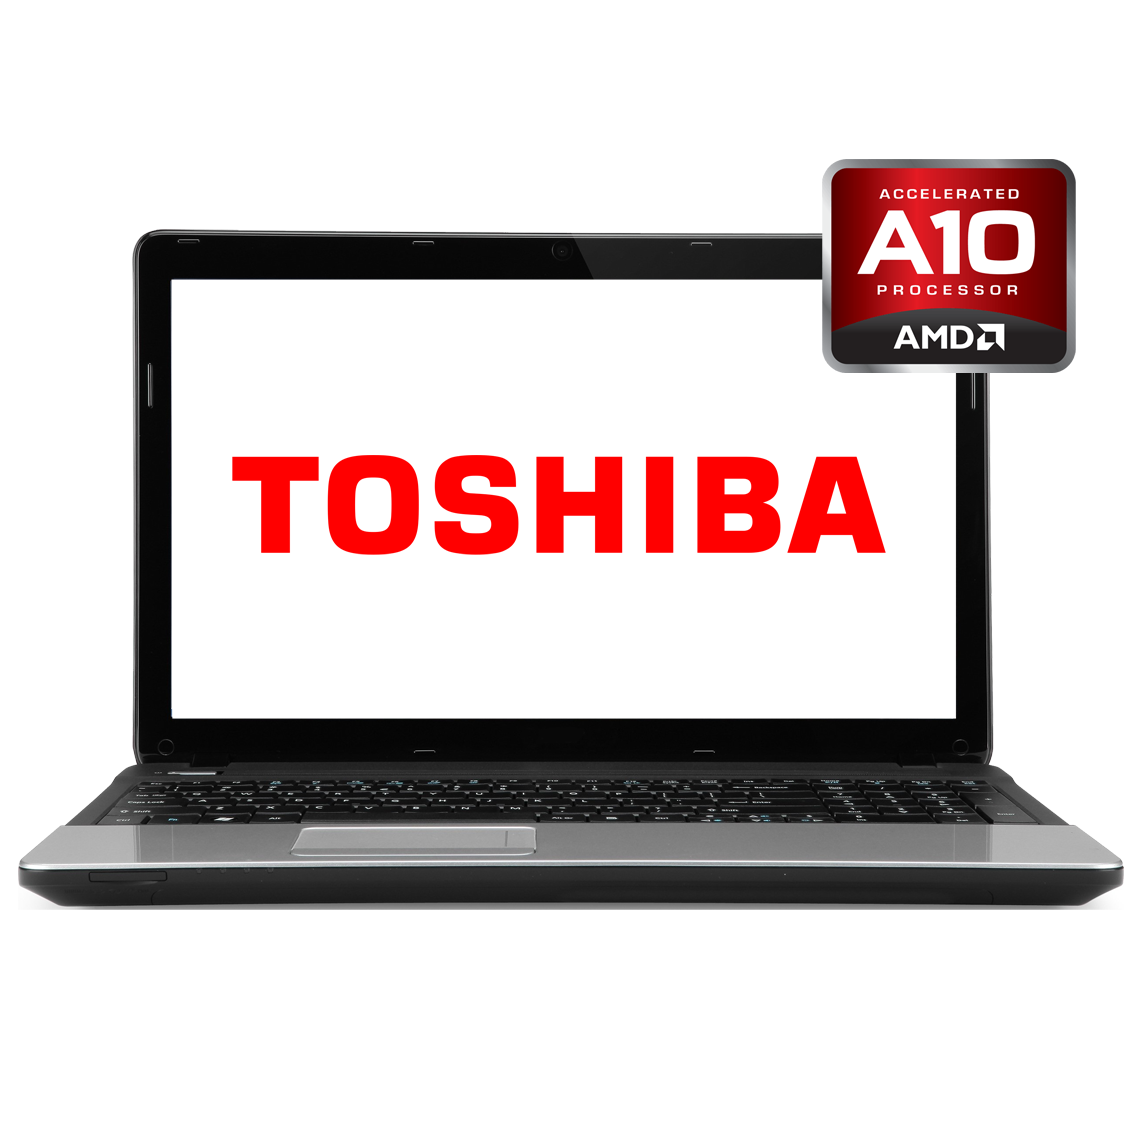 Toshiba - 14 inch AMD A10